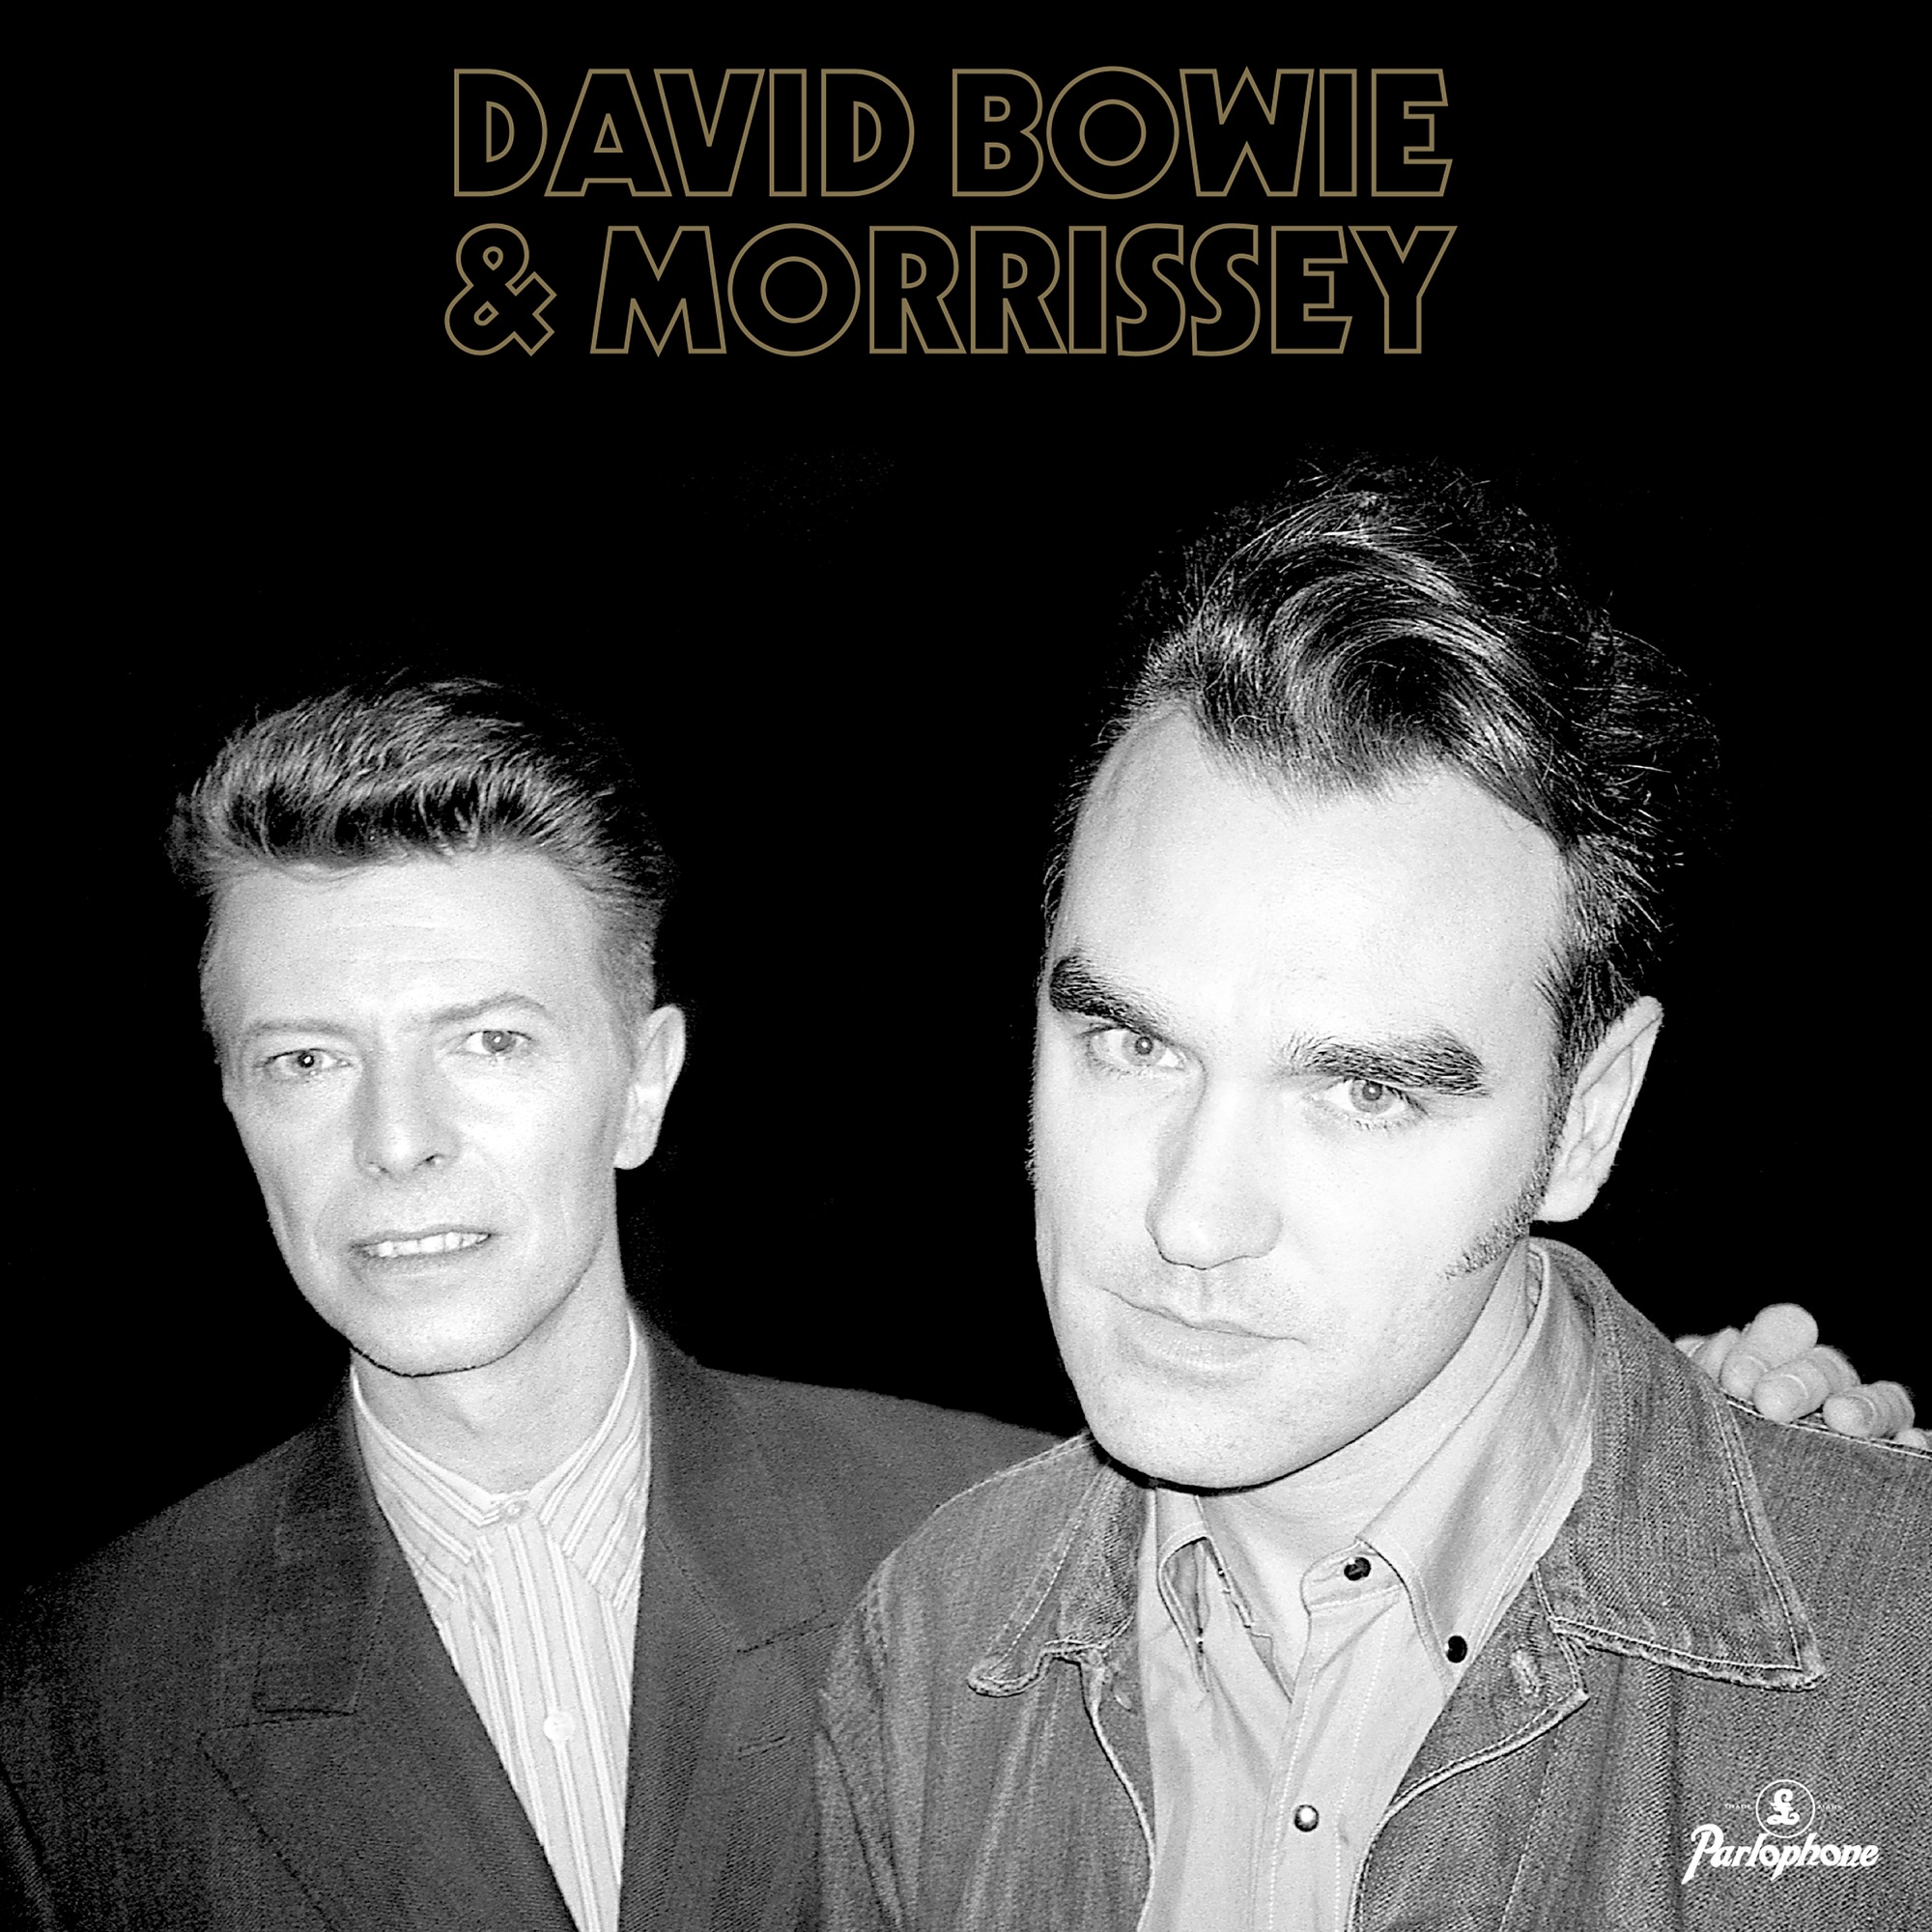 David Bowie & Morrissey - That’s Entertainment (2021 Version) / Cosmic Dancer (Live) - Single